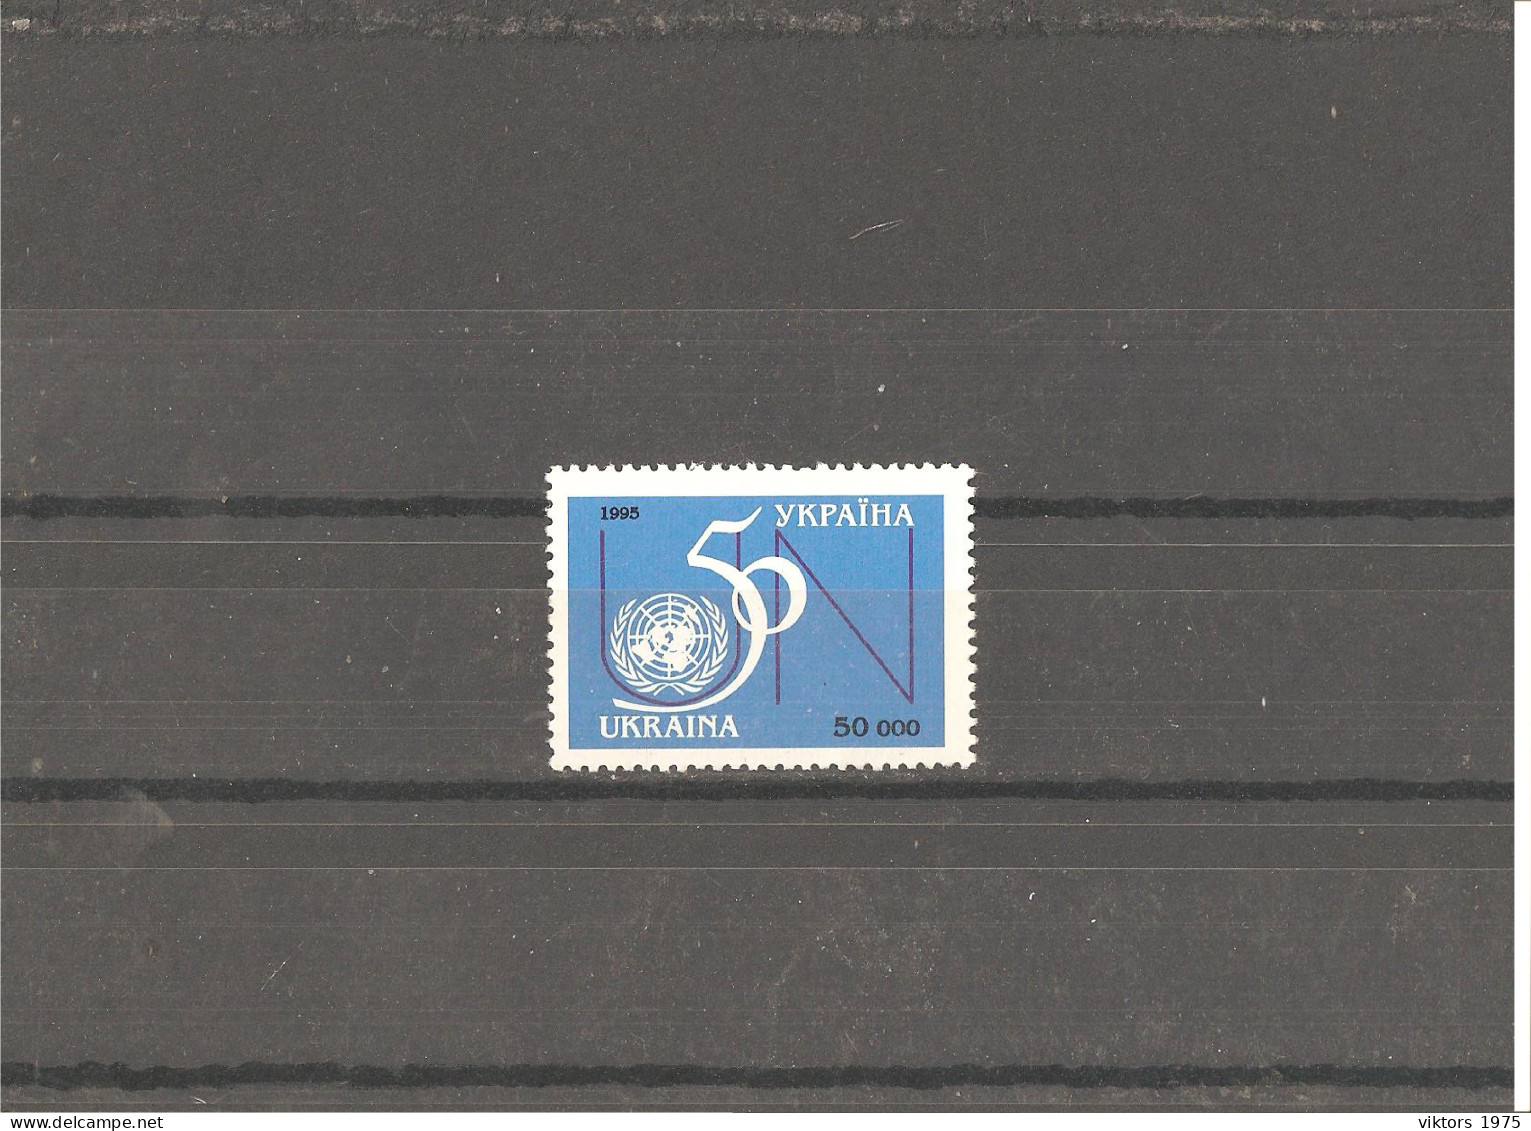 MNH Stamp Nr.152 In MICHEL Catalog - Ukraine